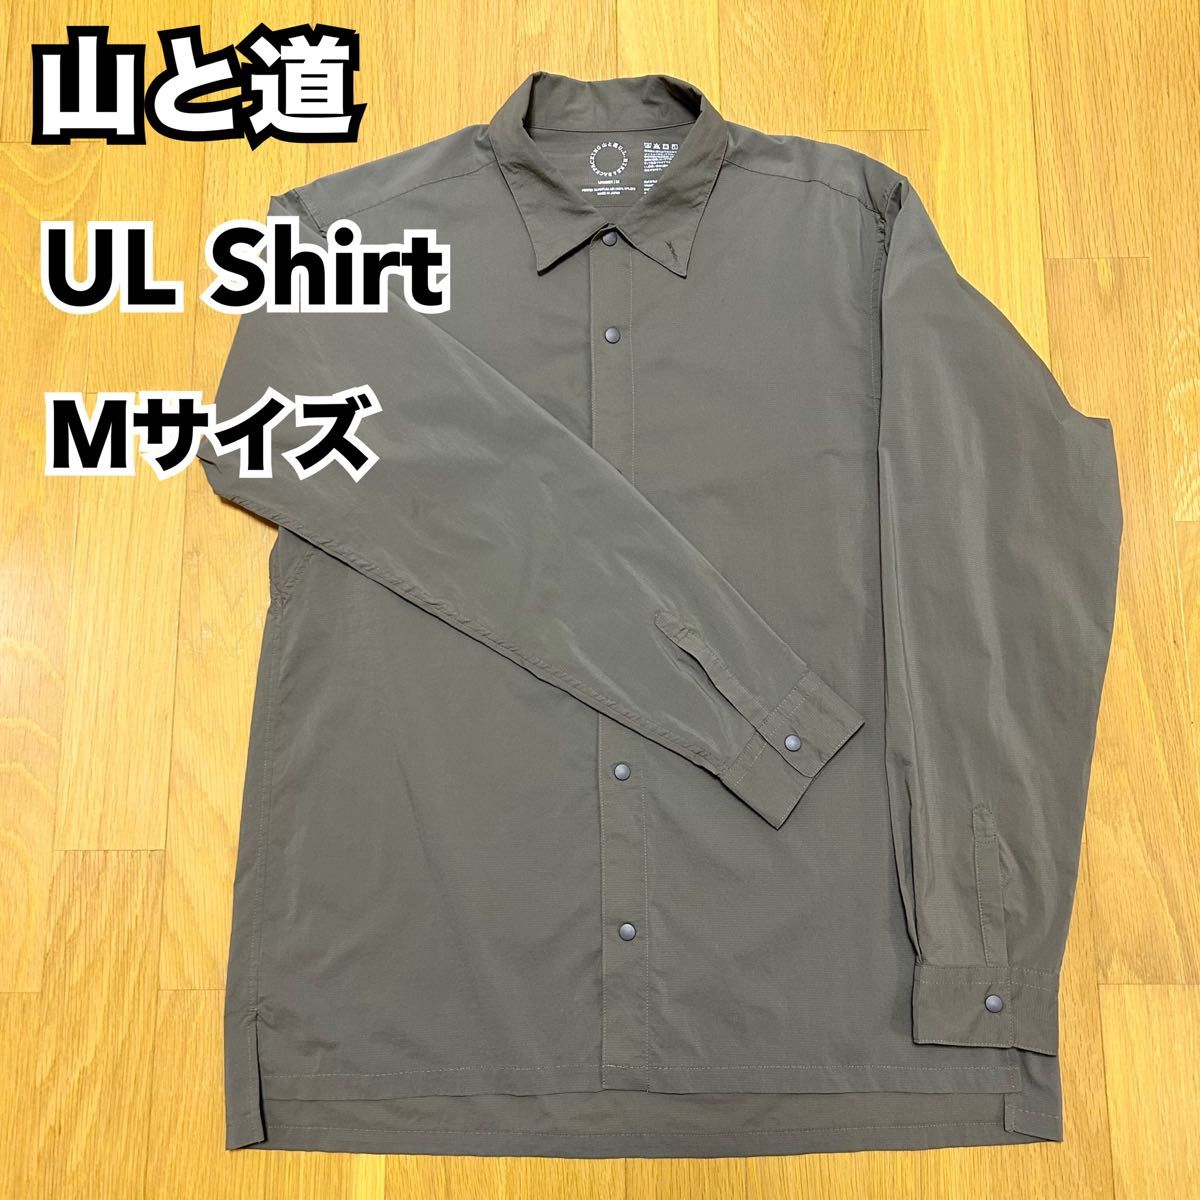 【山と道】ULシャツ Mサイズ 速乾軽量ULShirt パーテックスカンタムエア